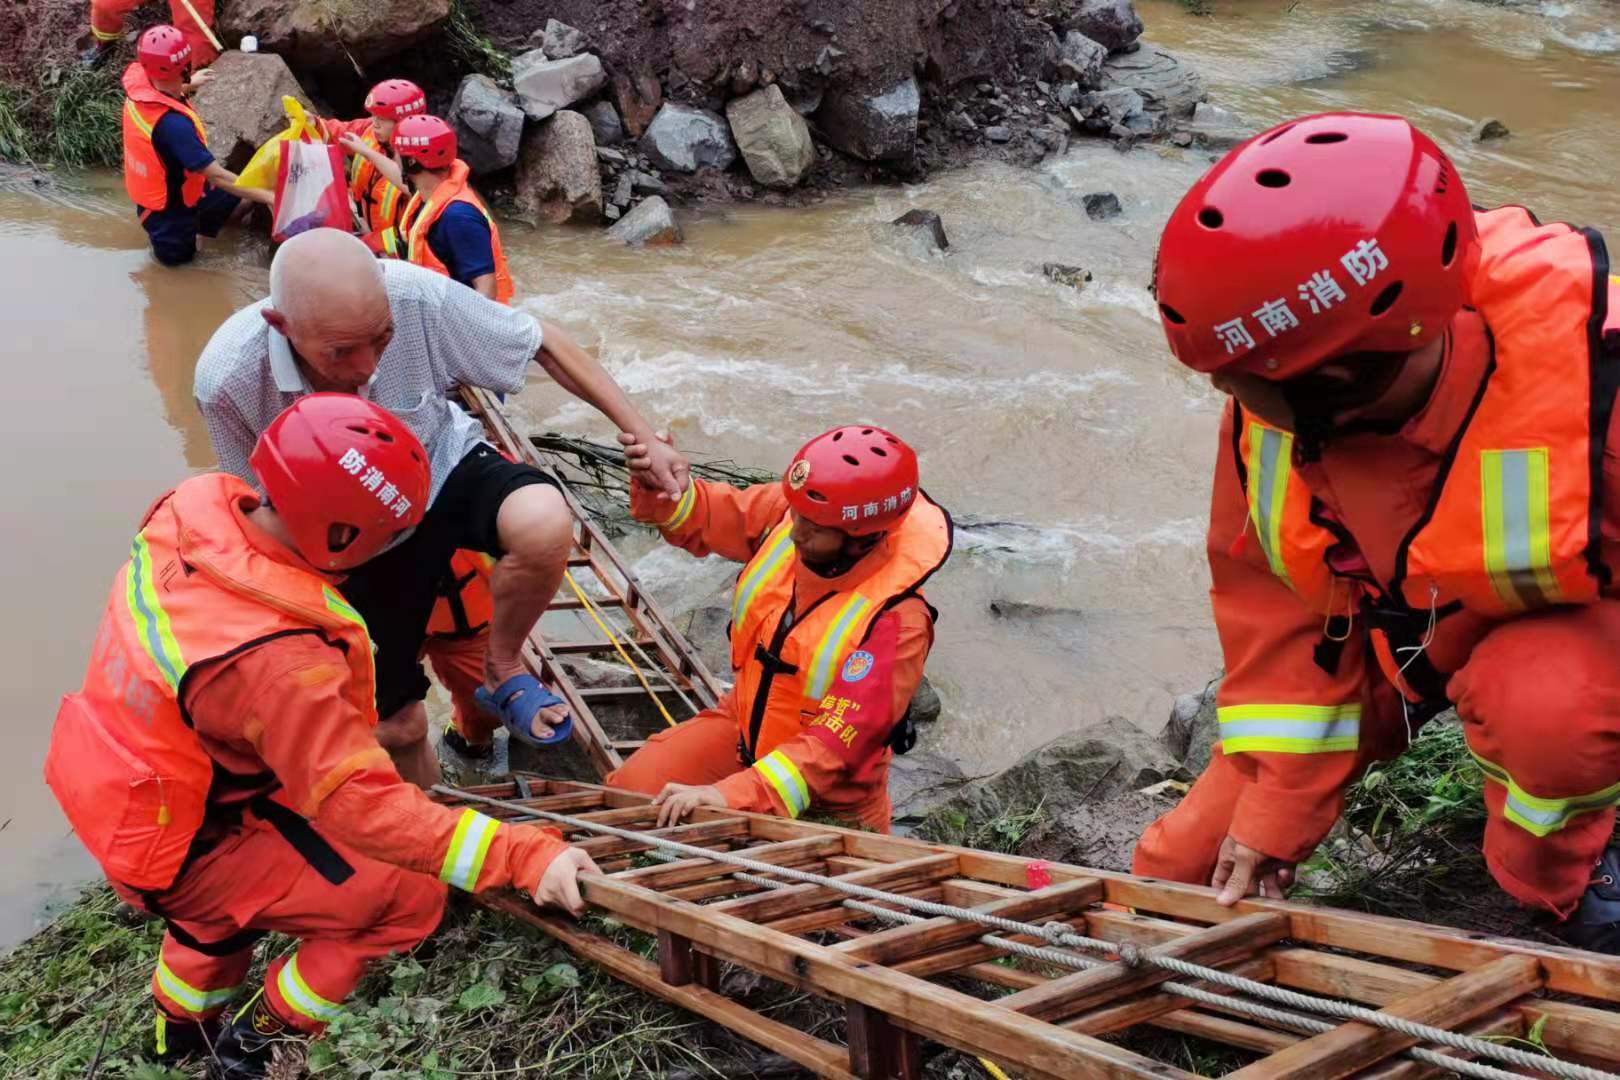 看到消防员来了心里就踏实了消防救援队伍全力投入郑州强降雨救灾纪实